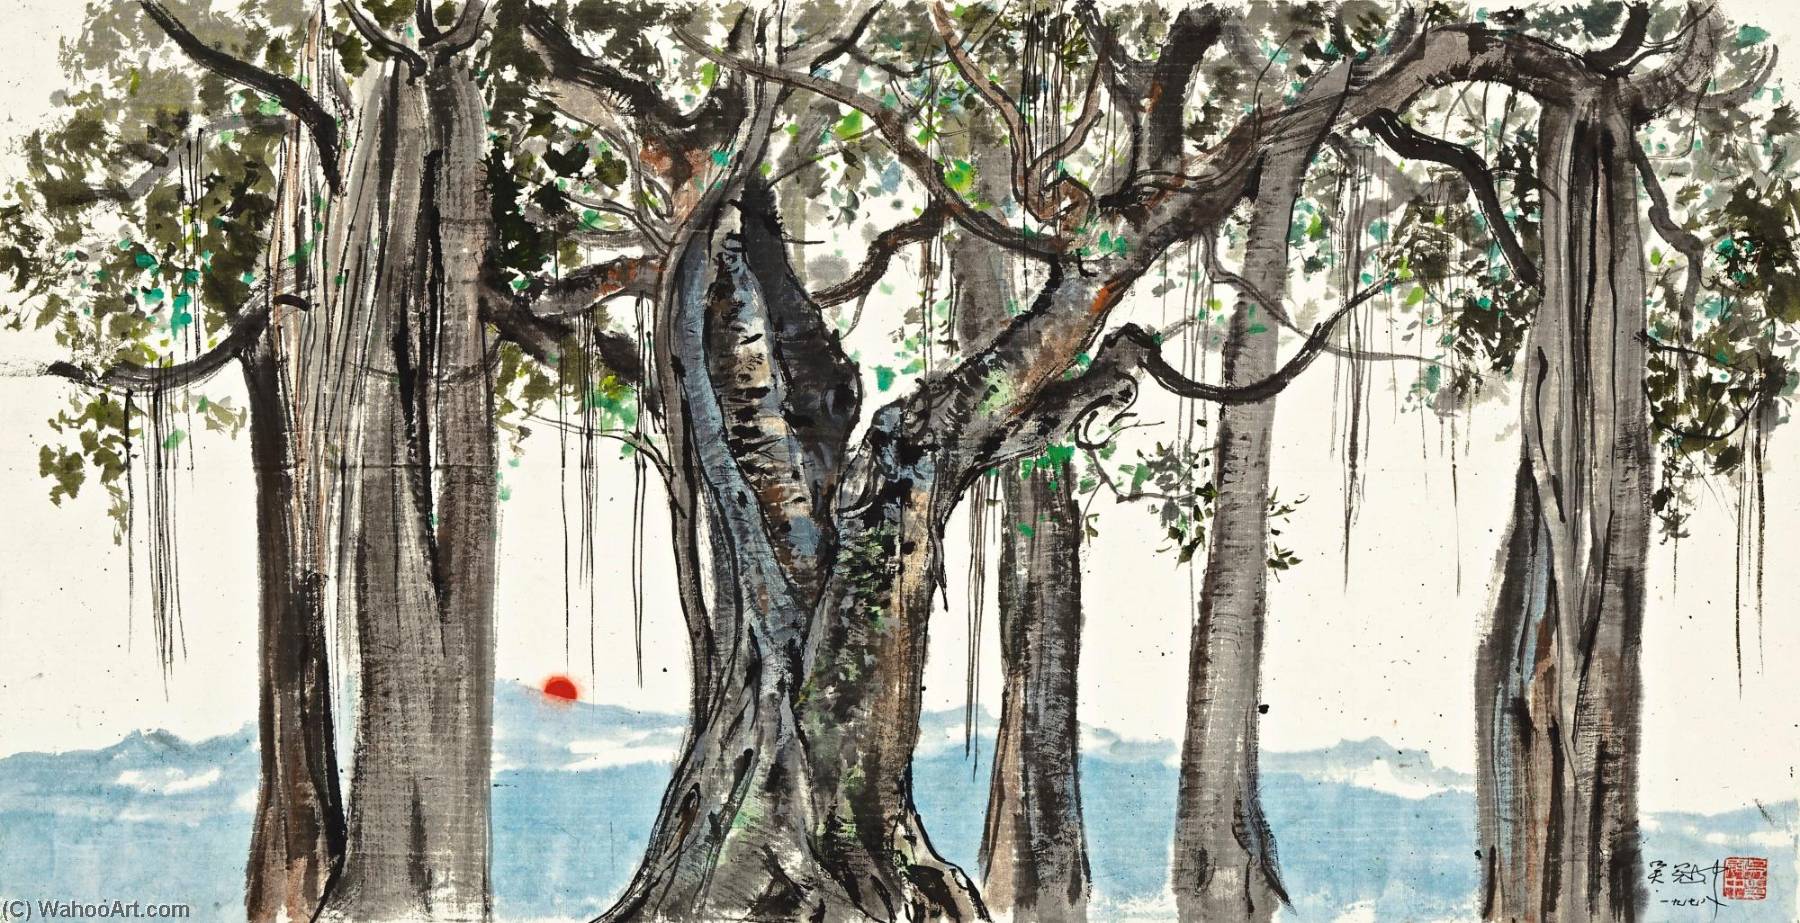 WikiOO.org - Encyclopedia of Fine Arts - Lukisan, Artwork Wu Guanzhong - Banyan Trees of Xishuangbanna